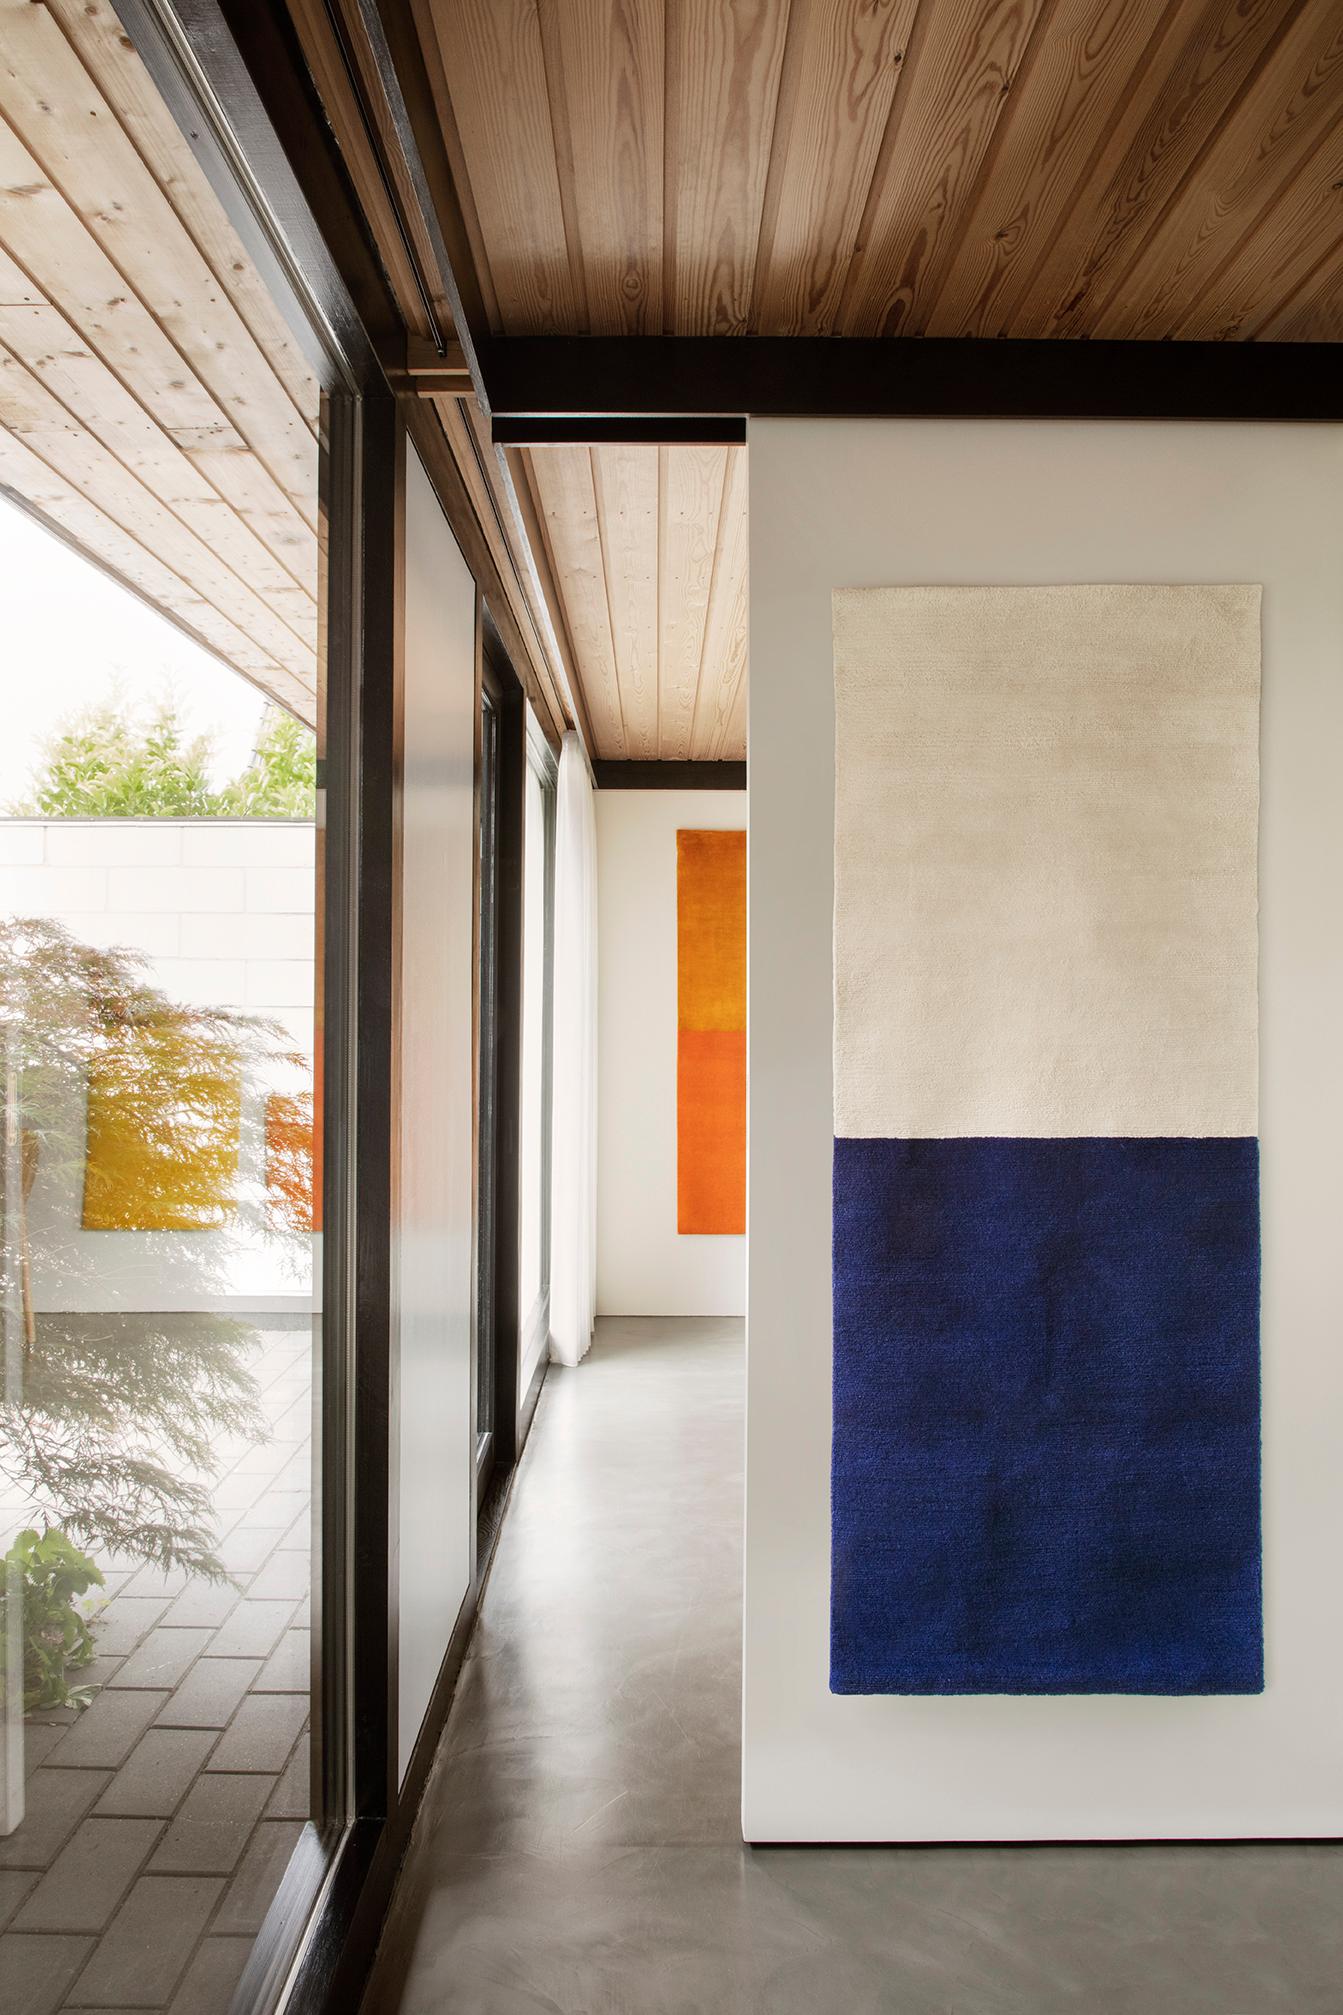 Weiß/blauer handgewebter Wandteppich von Calyah
Einzigartiges Stück
MATERIALIEN: Tibetische Wolle und Seide.
Abmessungen: 170 x 65 x 1 cm
Farbe: weiß/blau
Auch in den Farben rot/gelb, gold/orange, schwarz/grün erhältlich. 

Die zweifarbigen